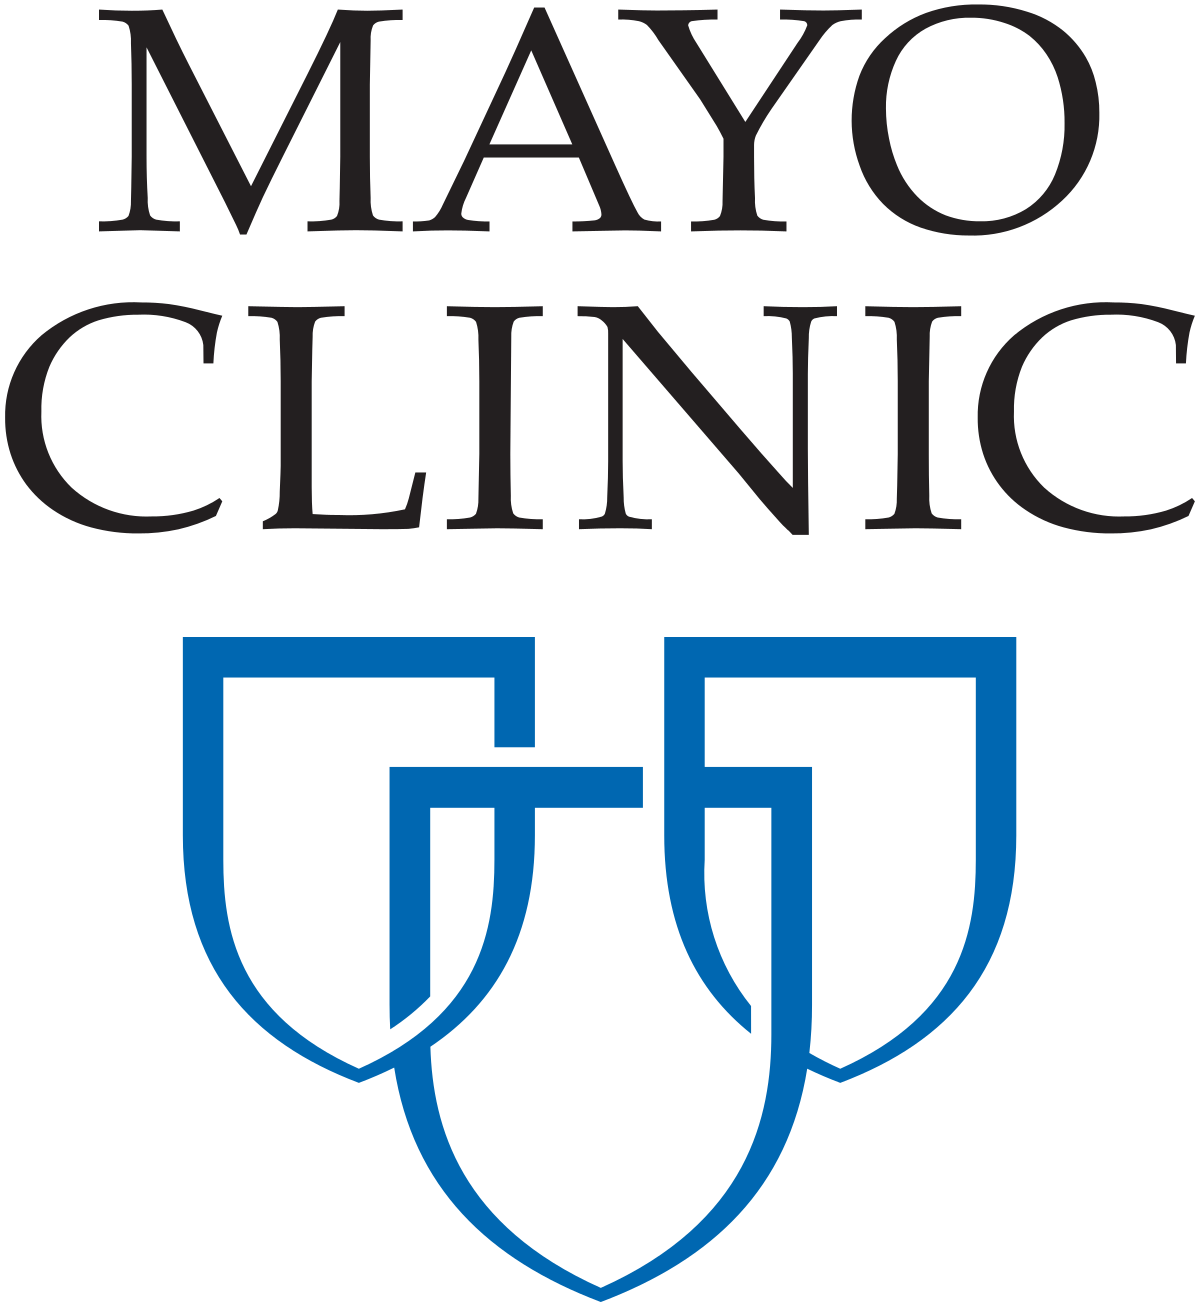 mayo clinic